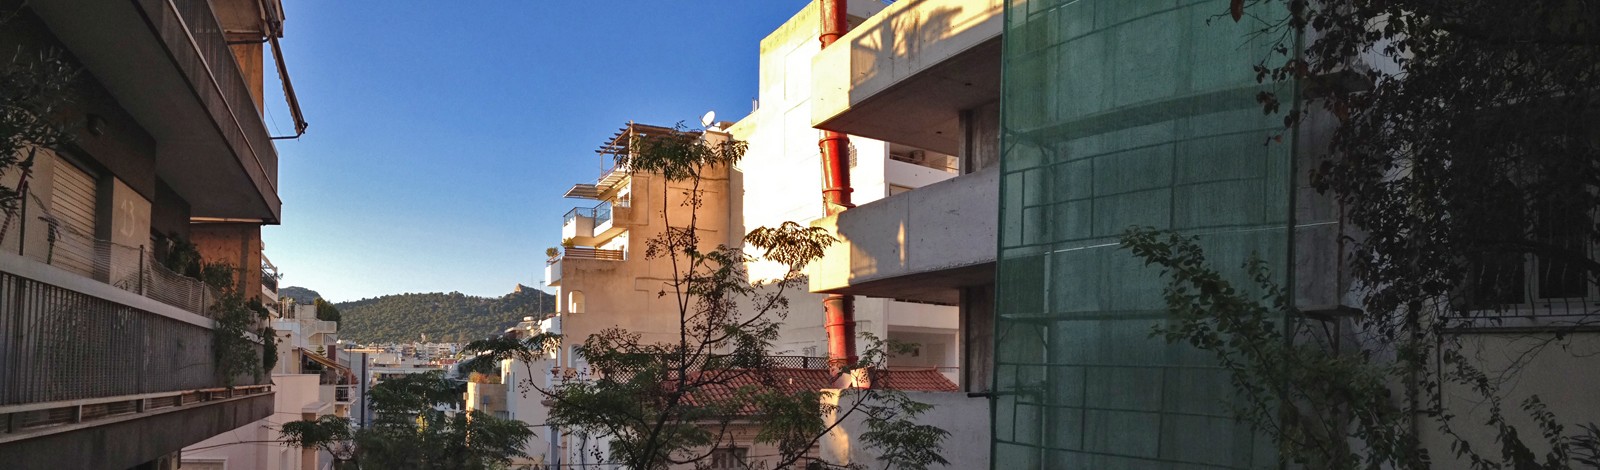 Σκαλωσιά στο έργο Ενοικίαση Σκαλωσιάς σε Οικοδομή  Ιλίσια, Αθήνα